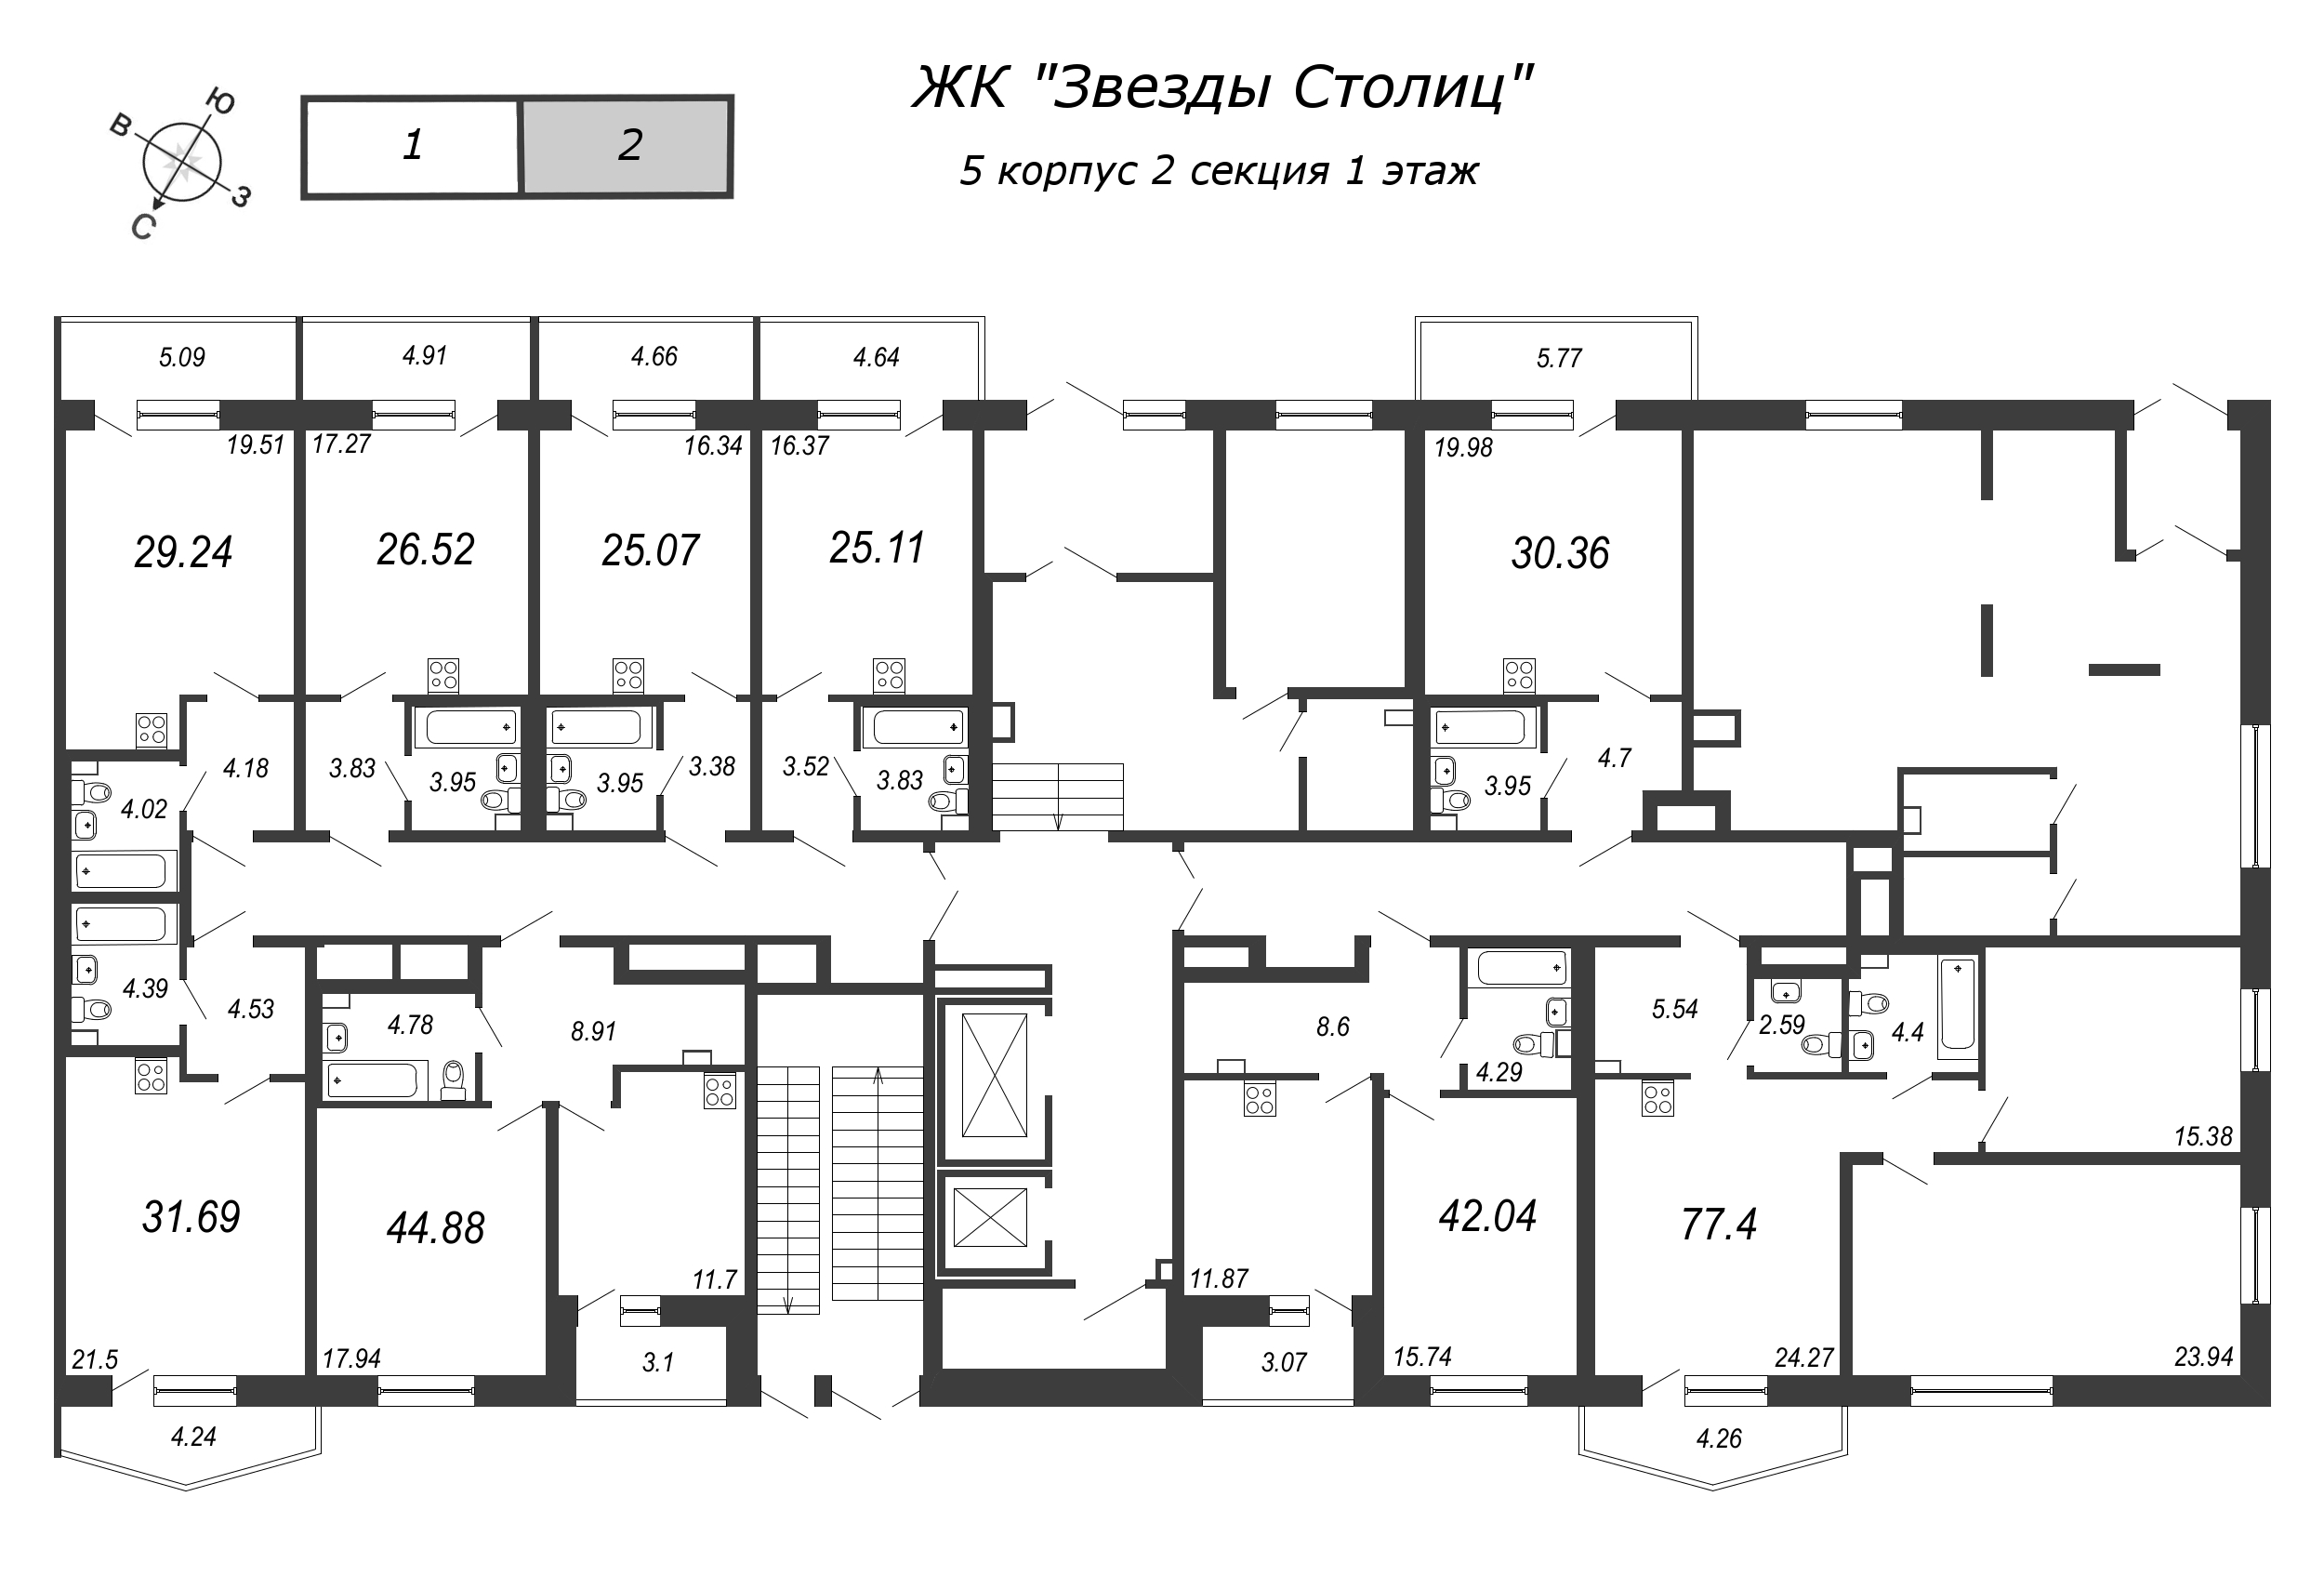 3-комнатная (Евро) квартира, 76.5 м² в ЖК "Звезды Столиц" - планировка этажа